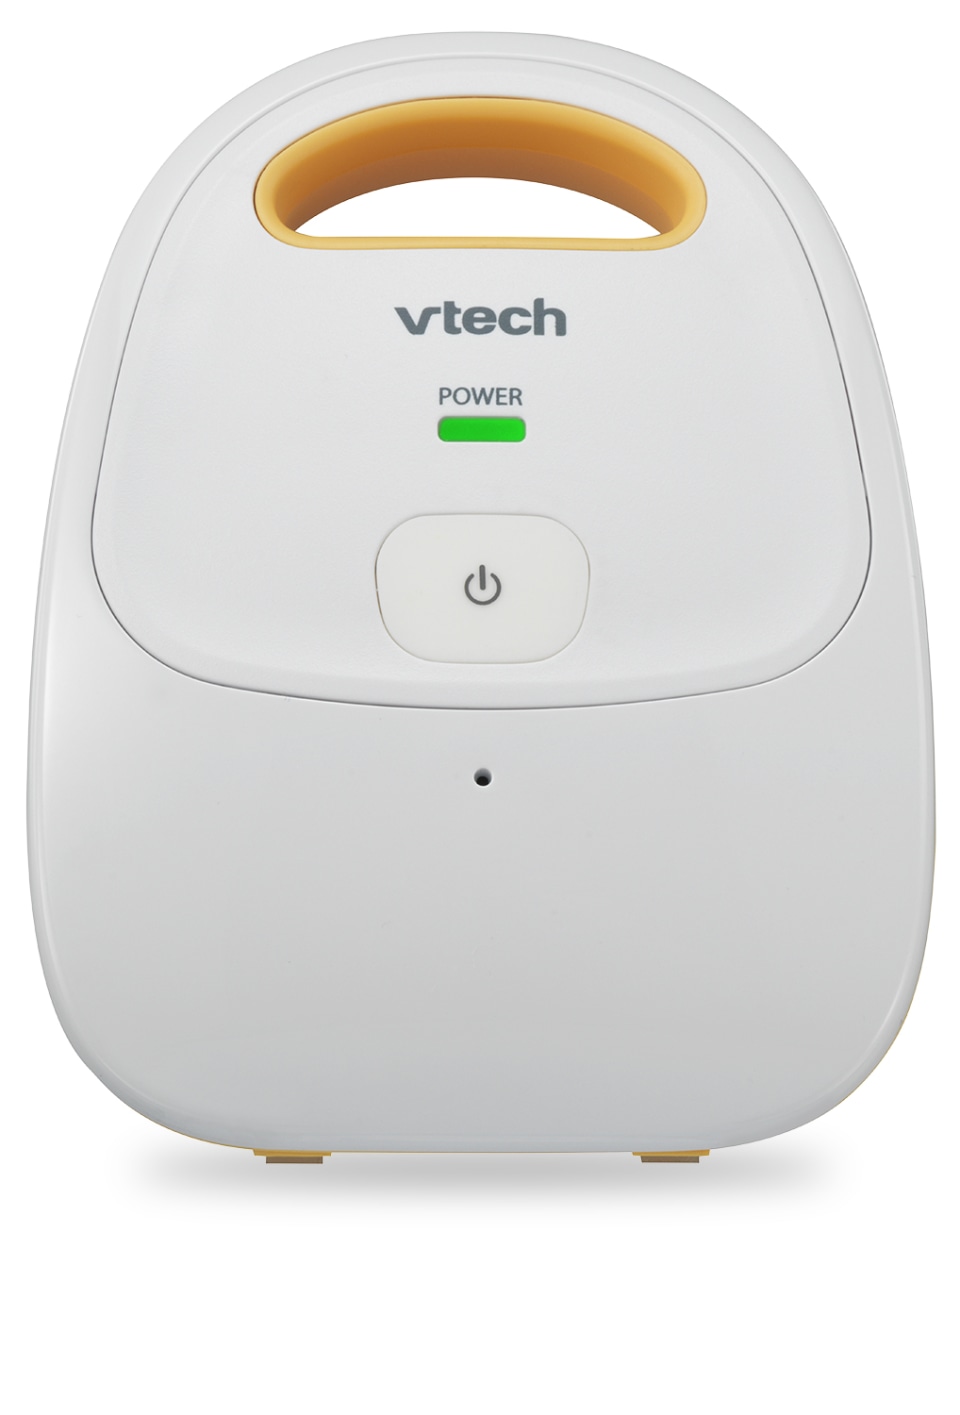 Vtech DM1111 Monitor de audio intercomunicador